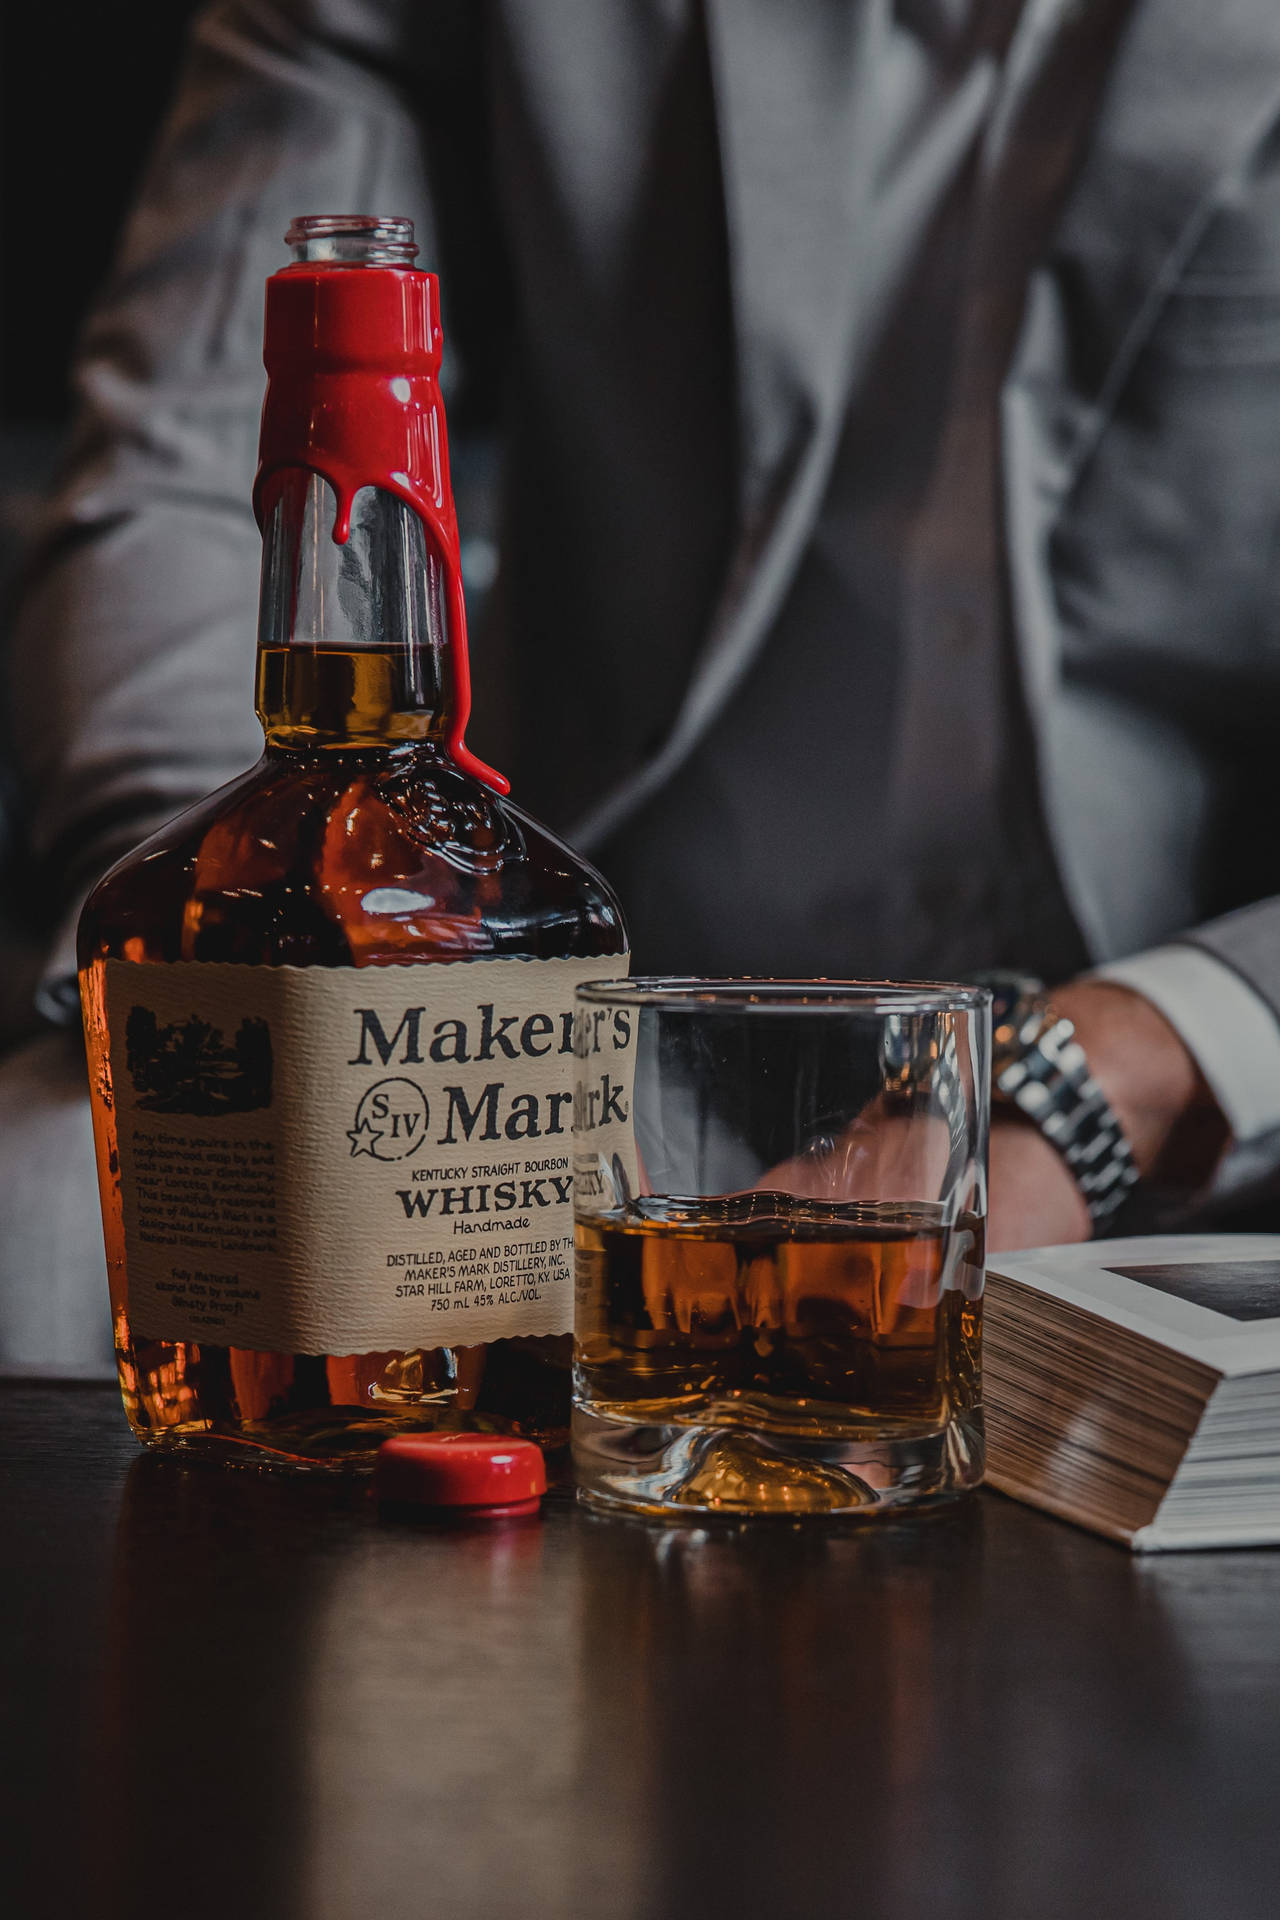 Caption: A Taste of Excellence - Maker's Mark Whiskey Wallpaper